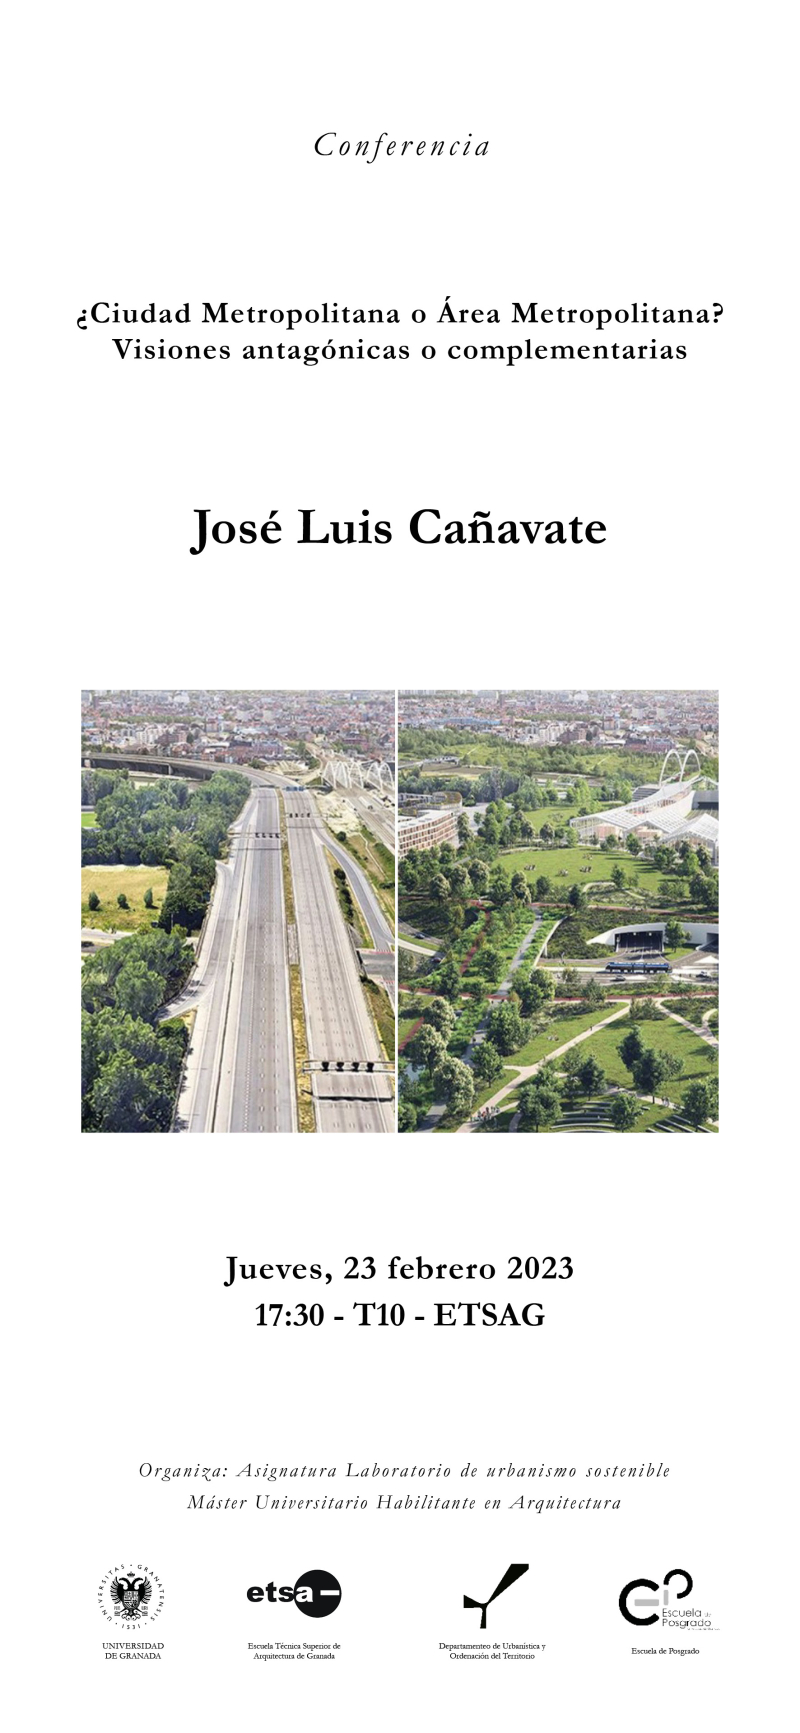 Cartel de la conferencia de José Luis Cañavate